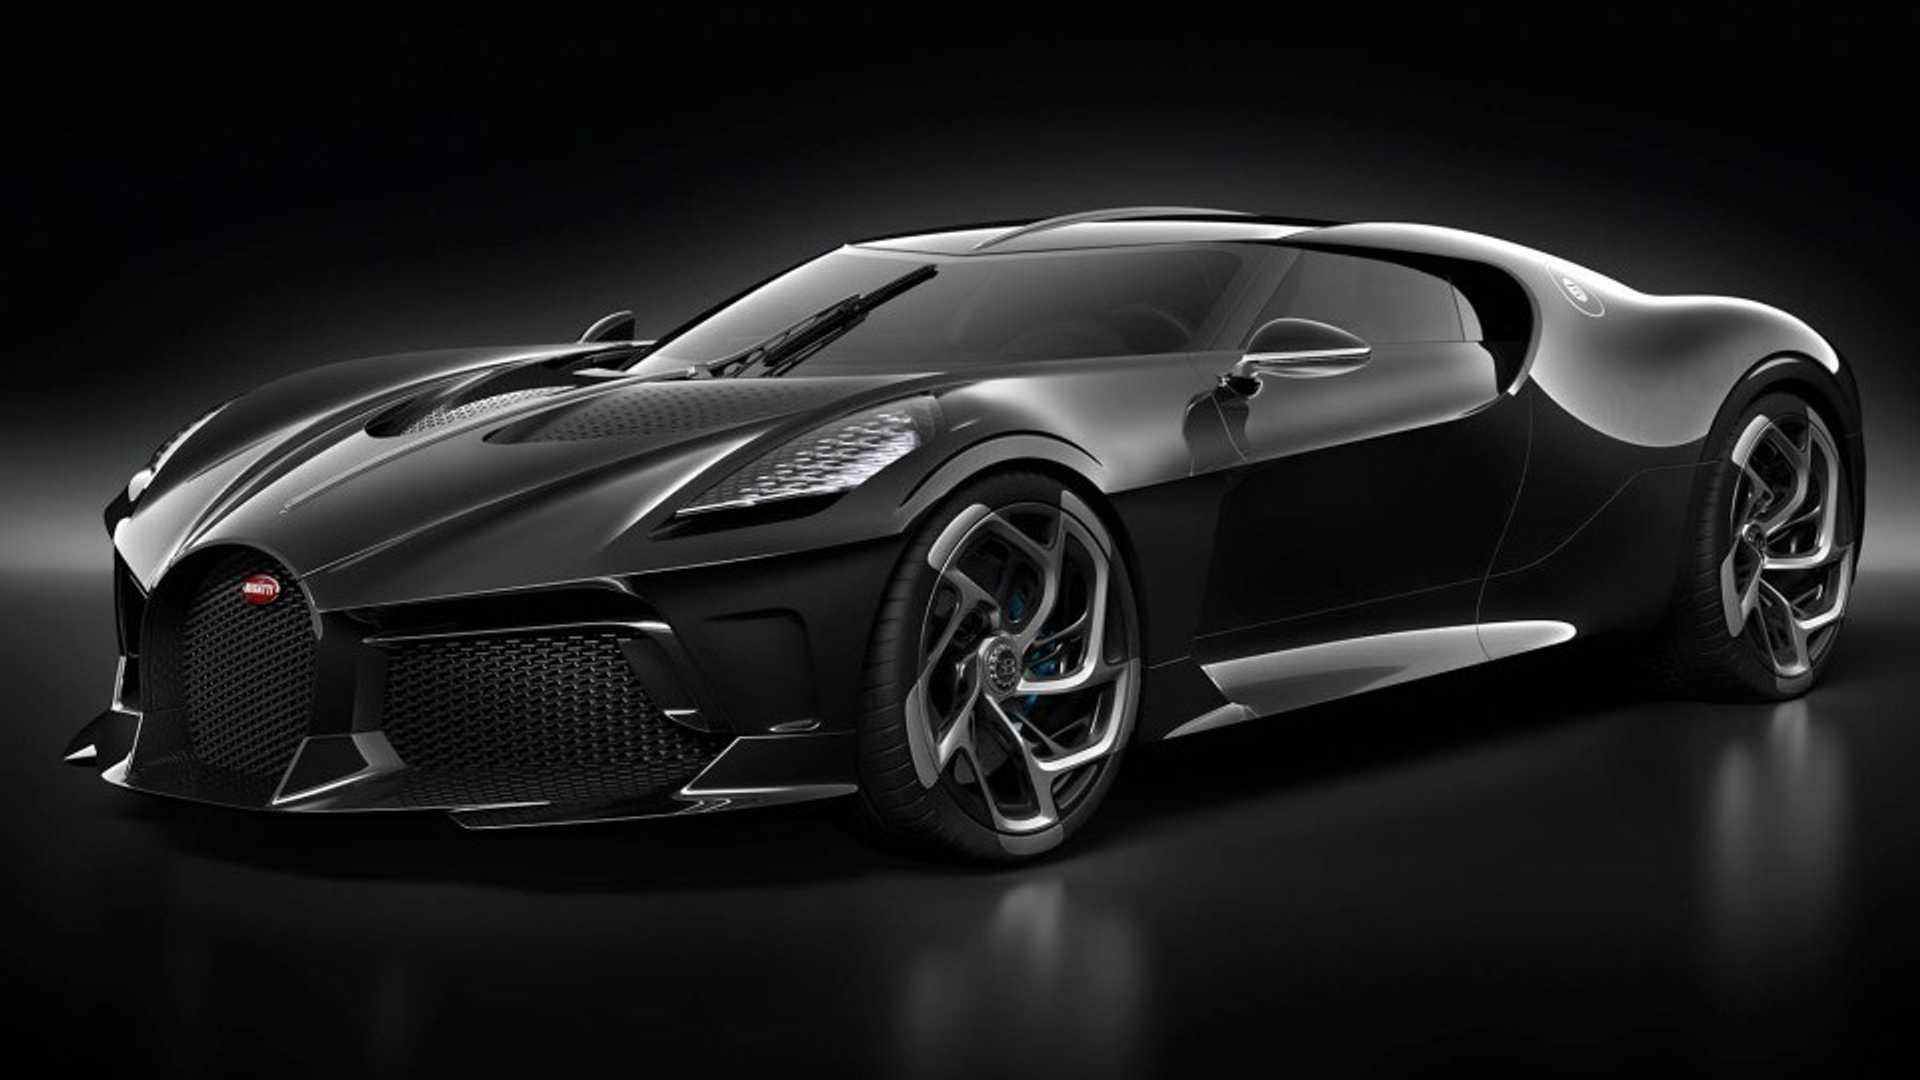 Bugatti La Voiture Noire - phiên bản xe duy nhất trên thế giới với sự hoàn hảo tuyệt đối và đẳng cấp vượt trội. Hãy đắm mình trong cuộc chiến giành giật lòng tin và sự ngưỡng mộ của những người đam mê siêu xe. Ngắm nhìn mỗi chi tiết của chiếc xe là bạn đã đắm mình trong thế giới của các thượng đế xe hơi.